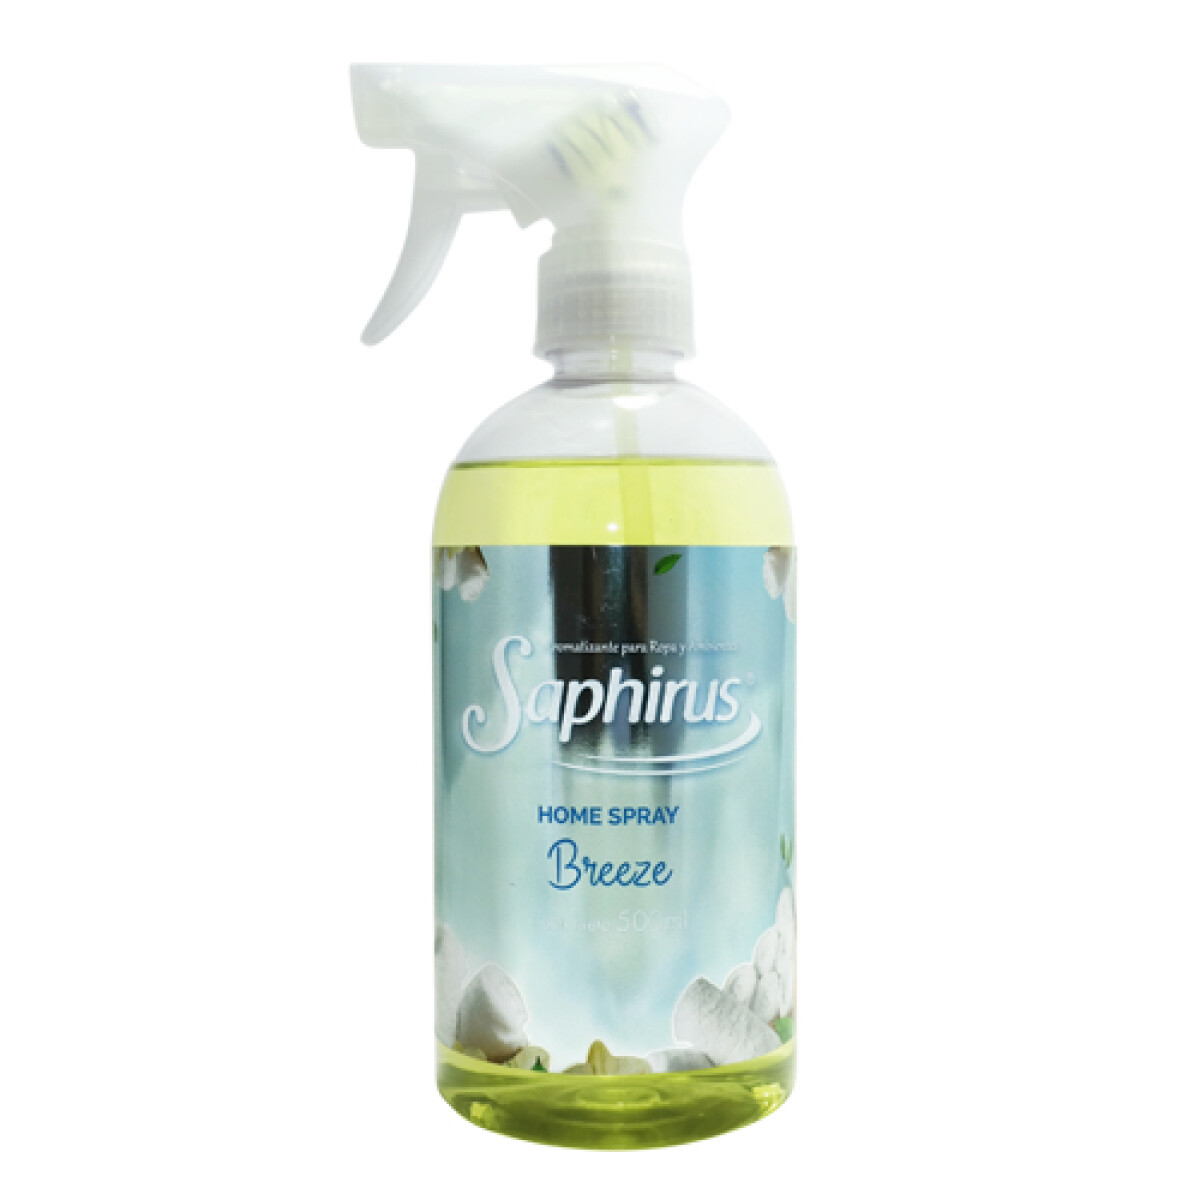 Home Spray Aroma Breeze SAPHIRUS 500 mL 